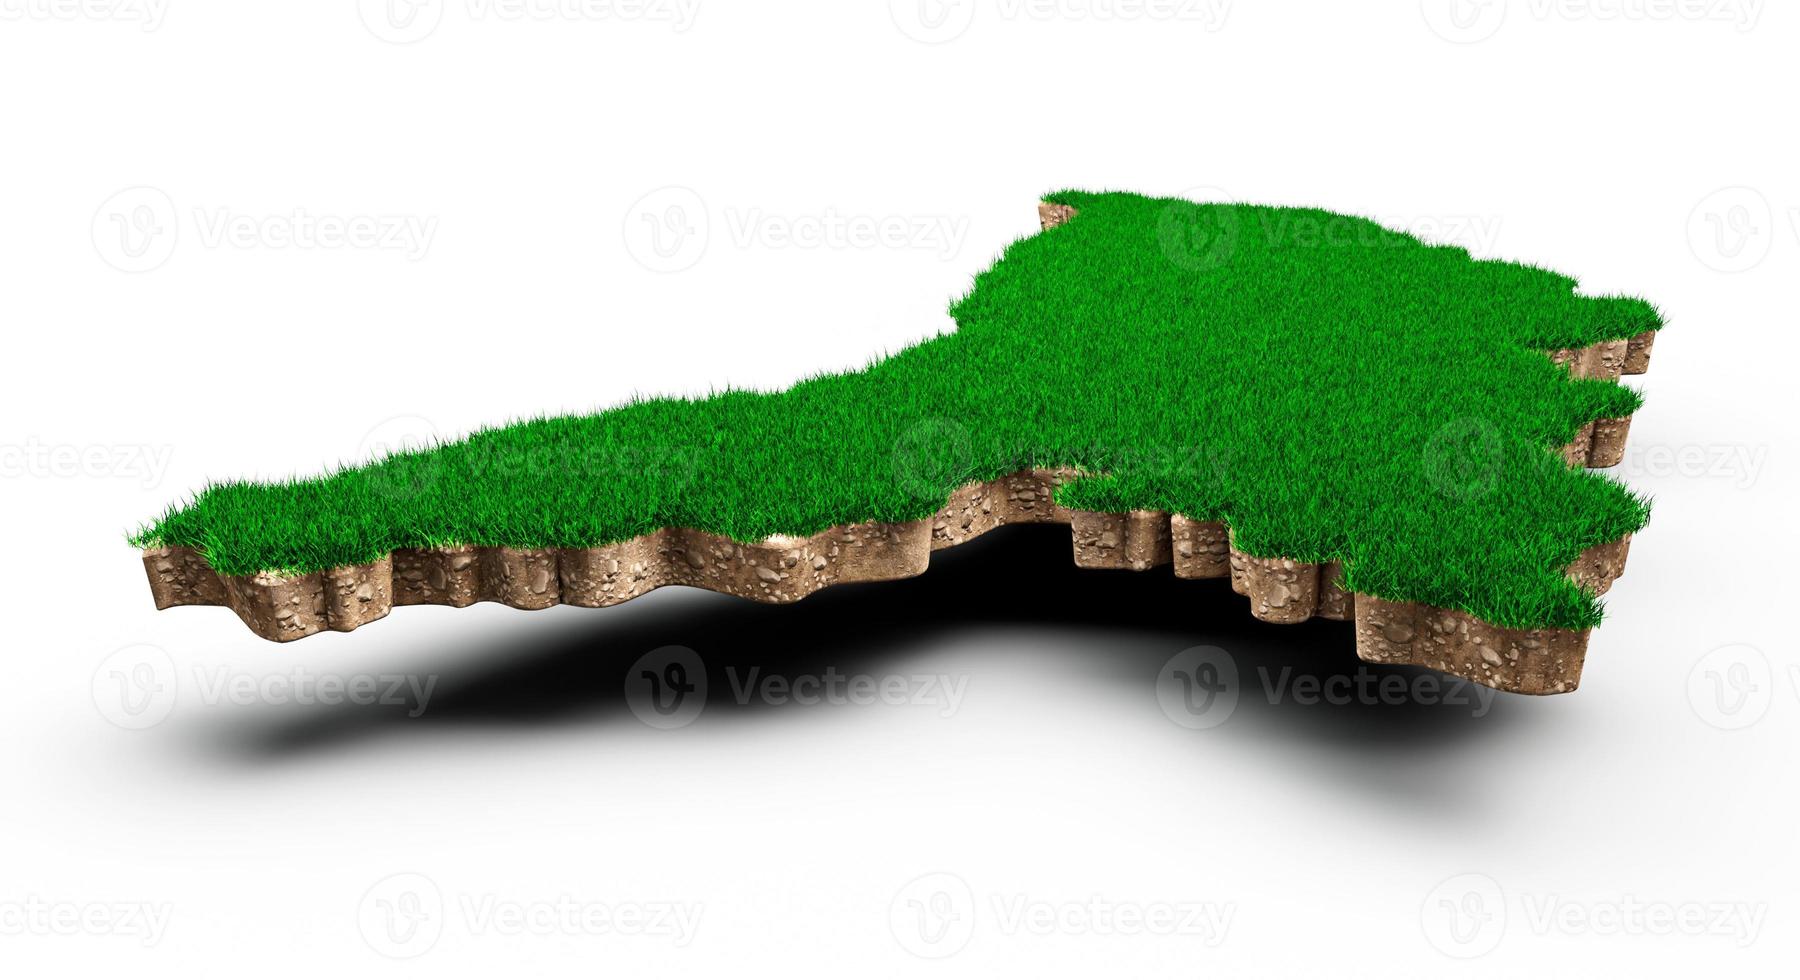 Moldavia mapa suelo tierra geología sección transversal con hierba verde y textura de suelo de roca ilustración 3d foto